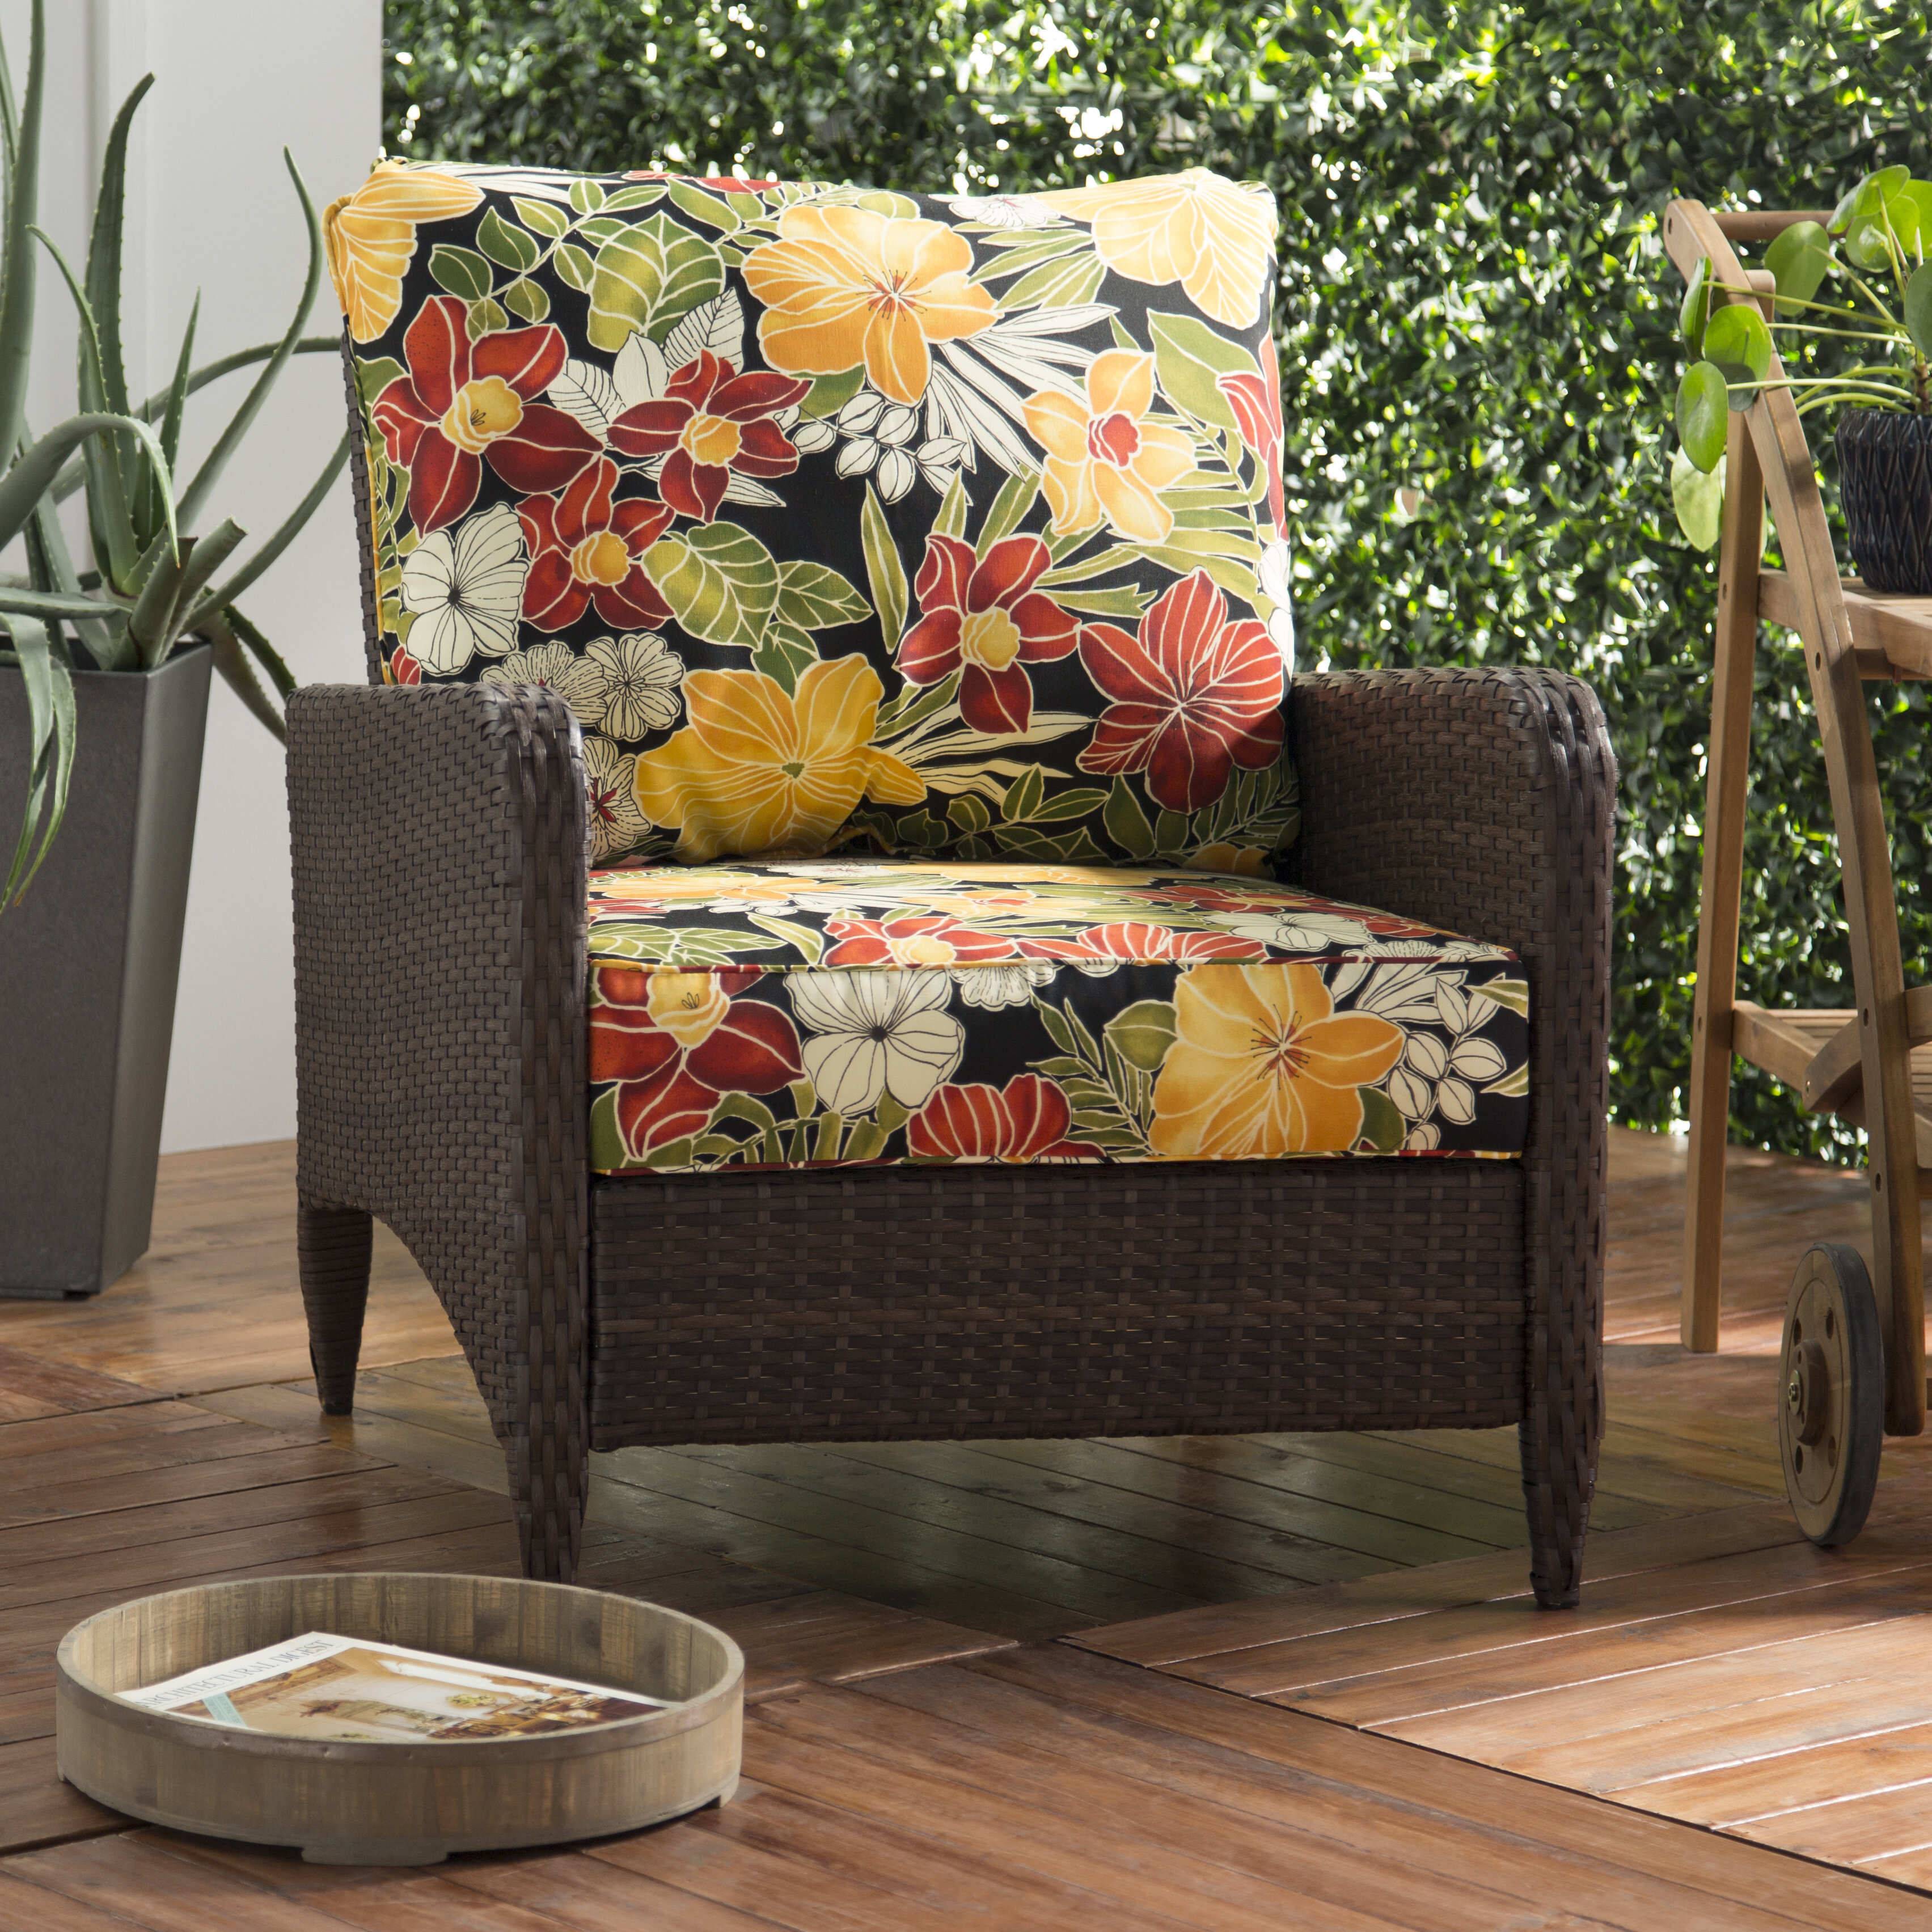 Set of 2 22" Outdoor Porch/Patio Pillows Tropical Floral Design 